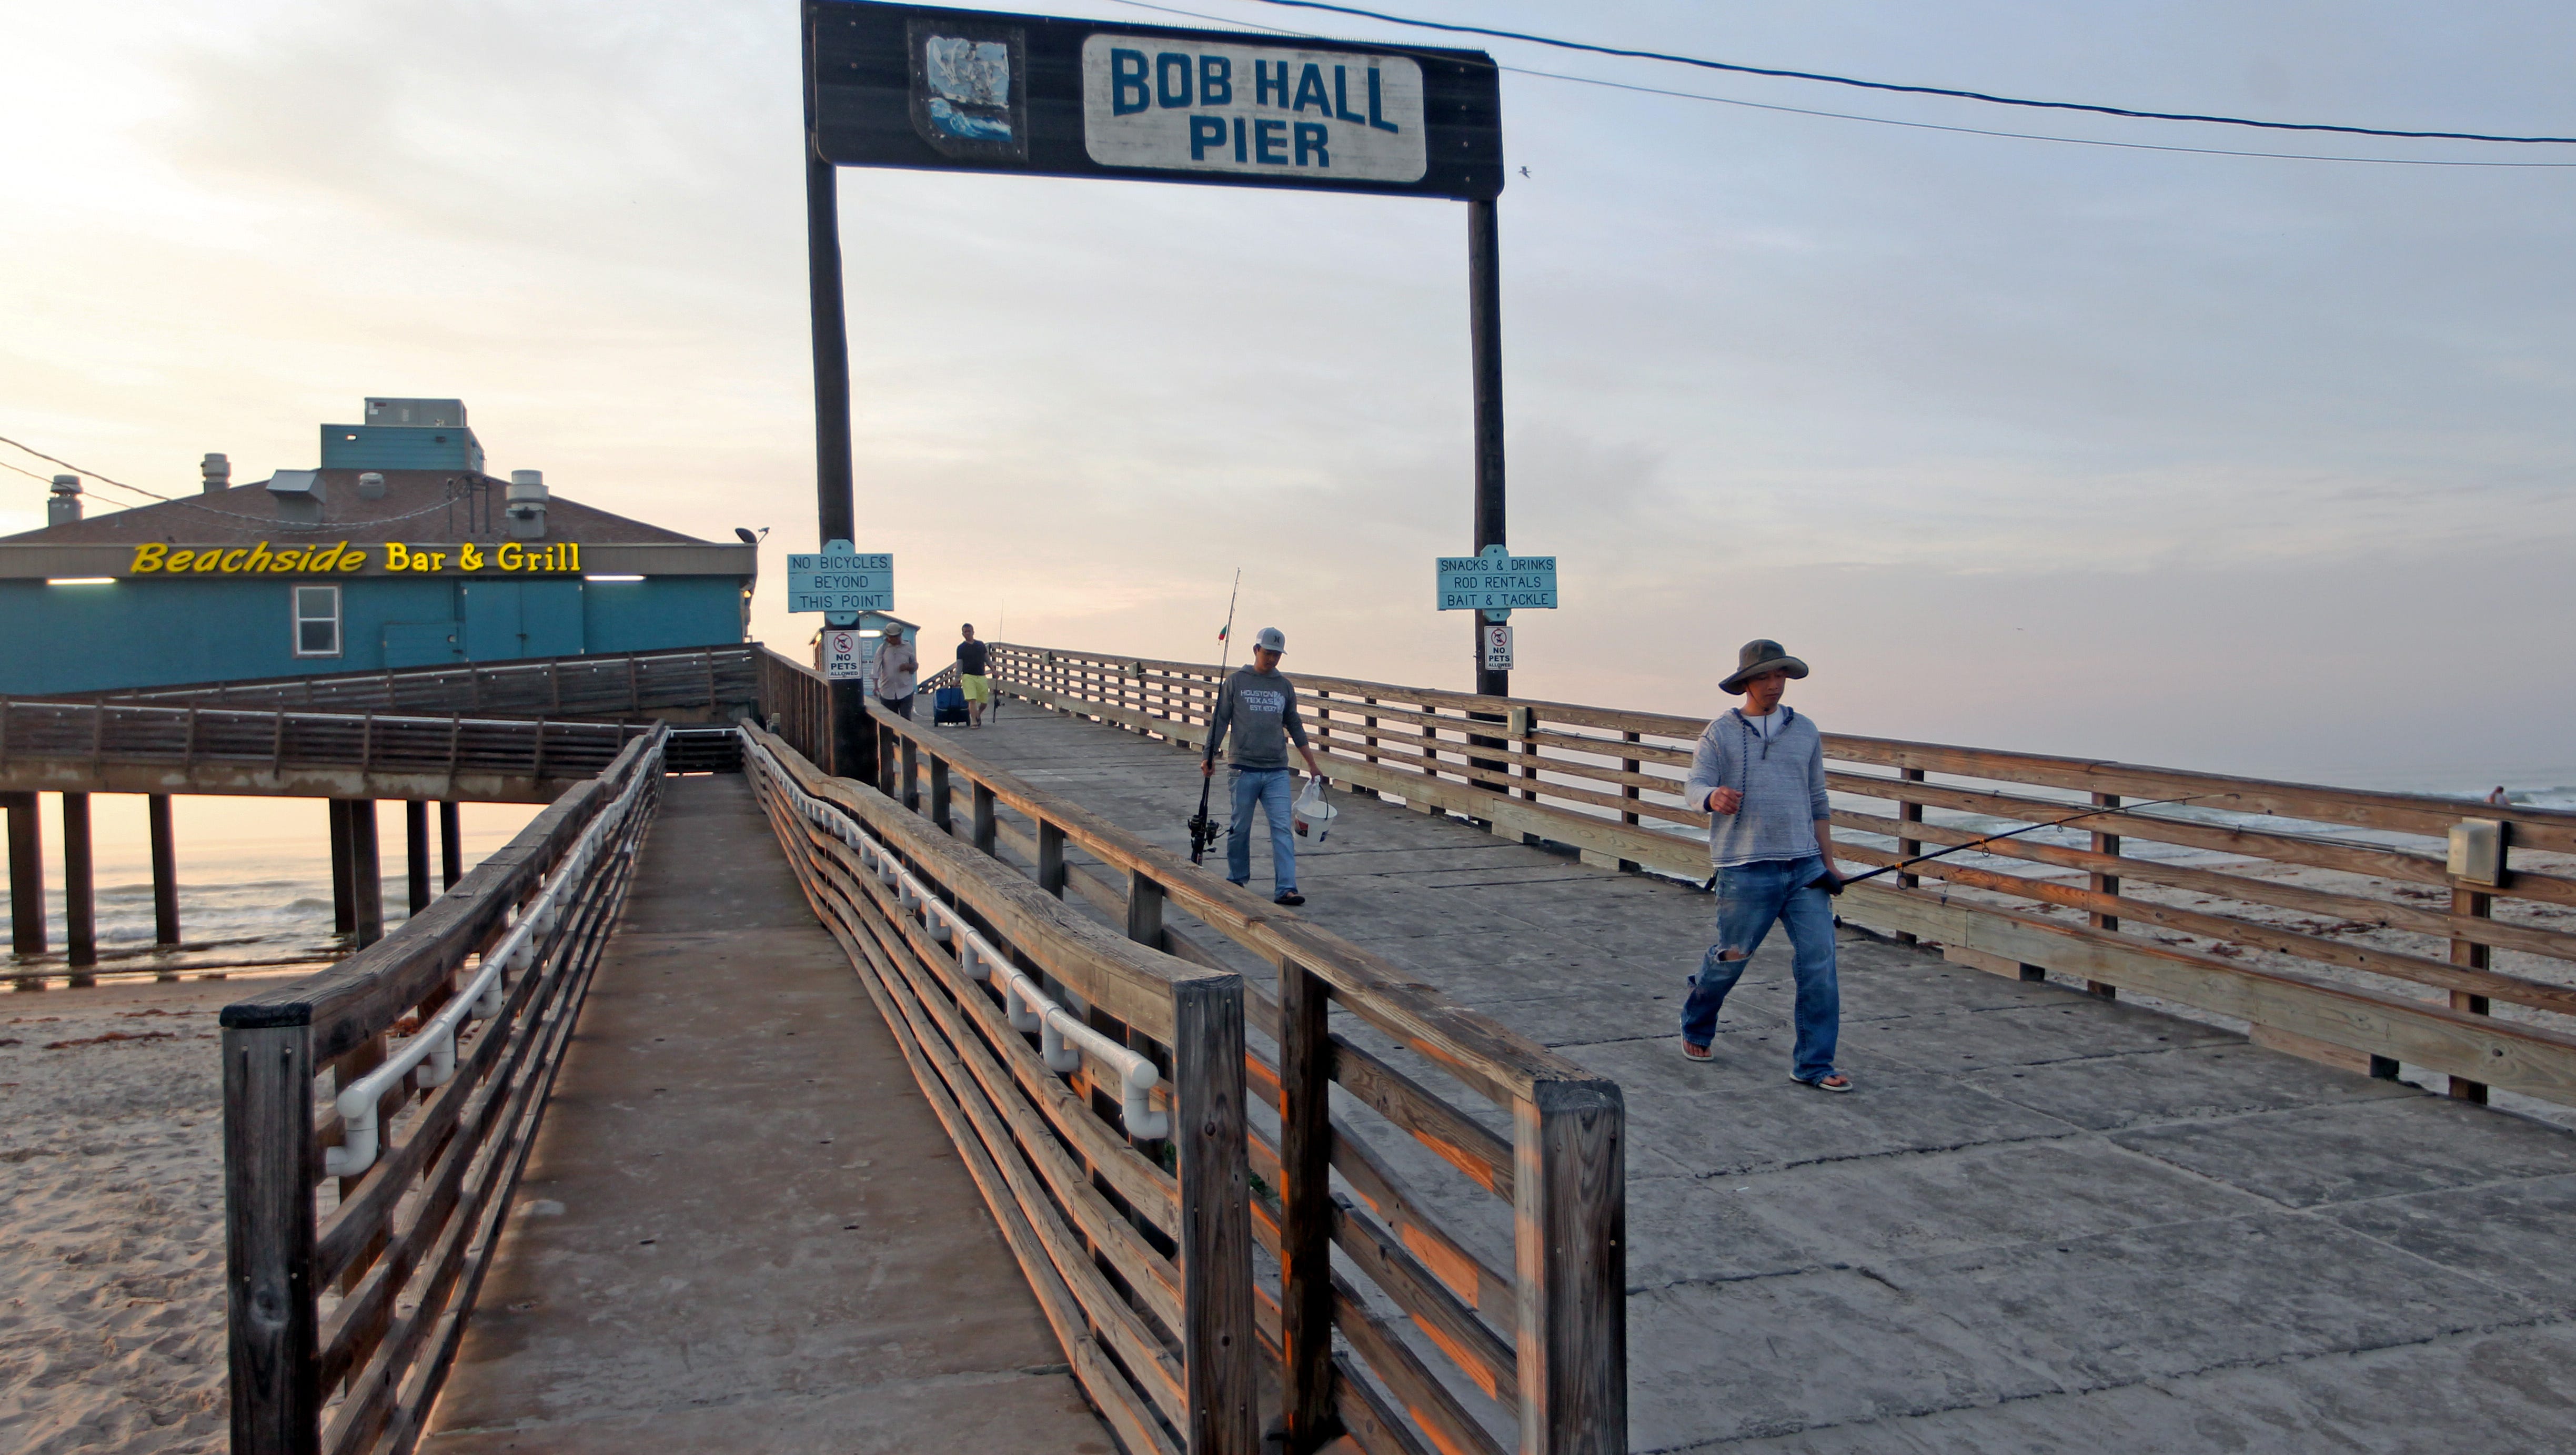 Bob hall pier fishing